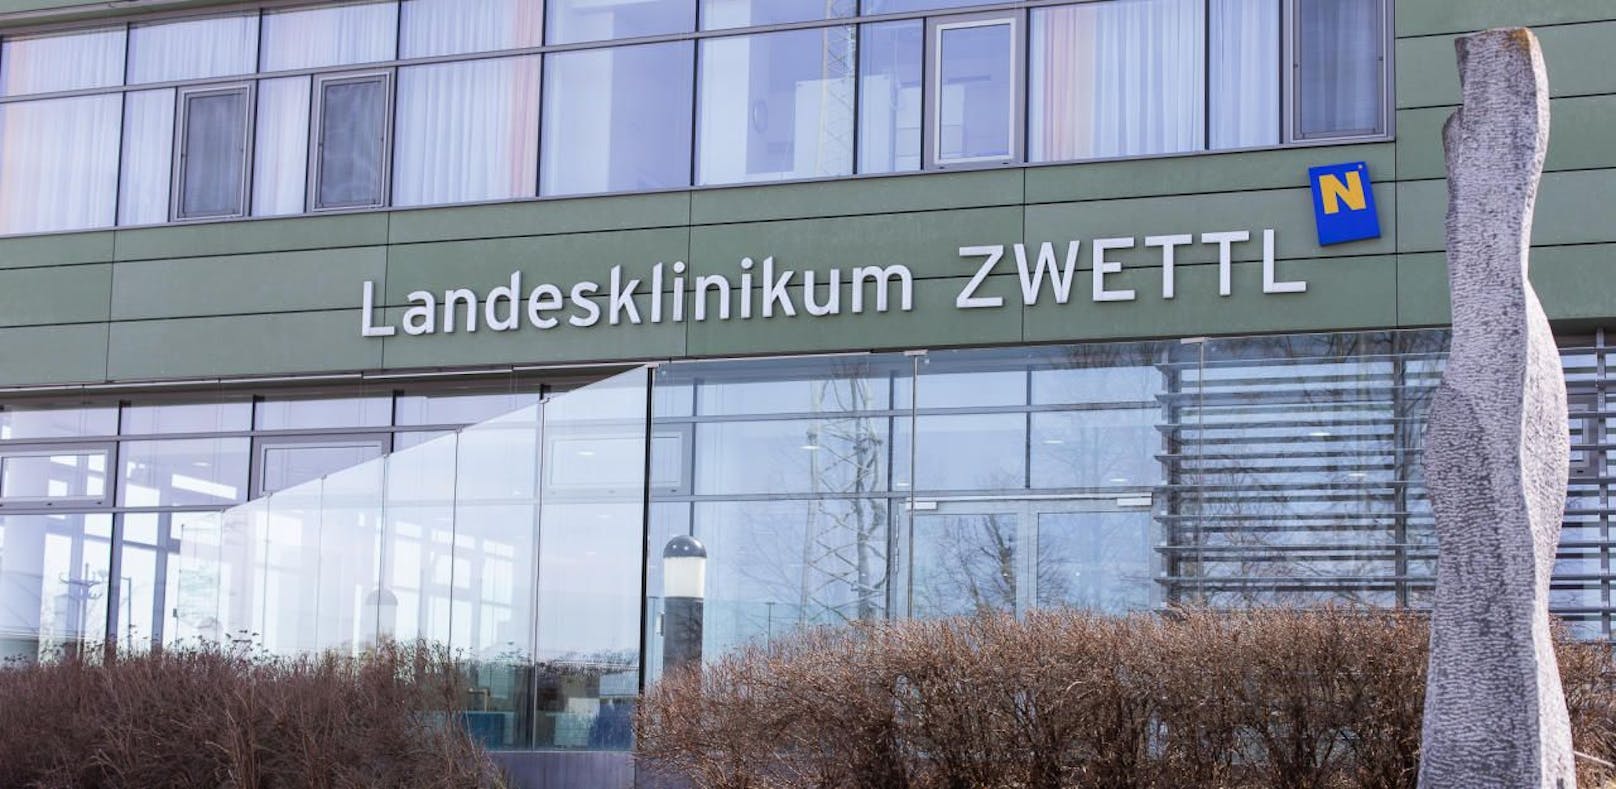 7 Verletzte landeten im Spital Zwettl.